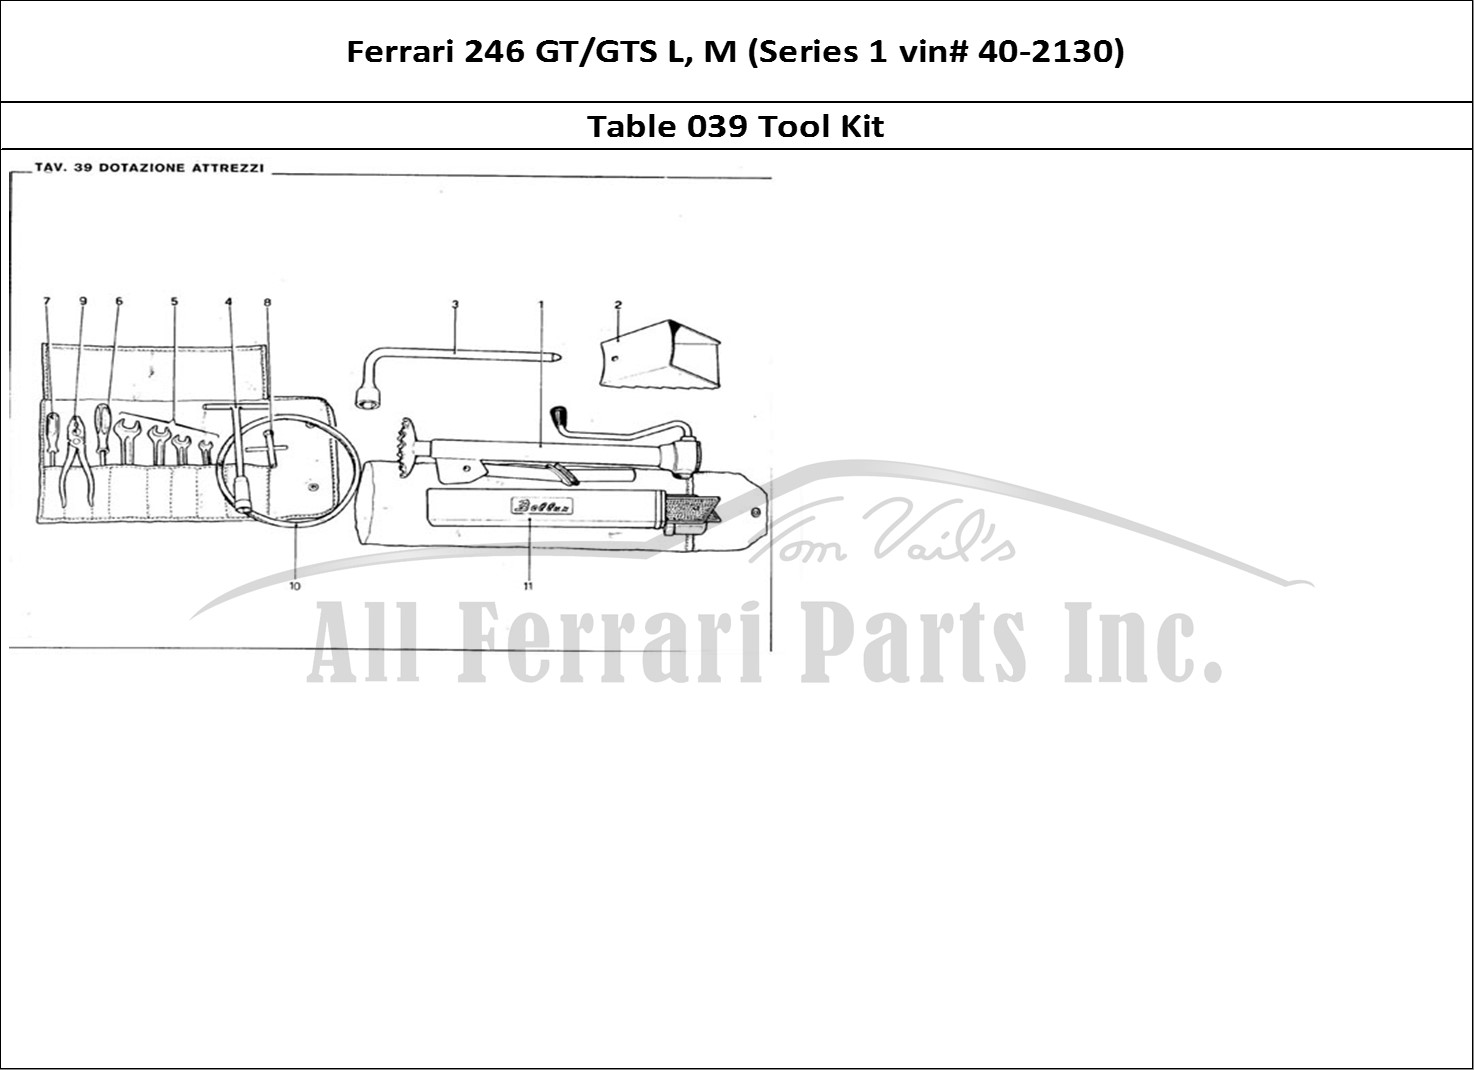 Ferrari Parts Ferrari 246 GT Series 1 Page 039 Tool Kit